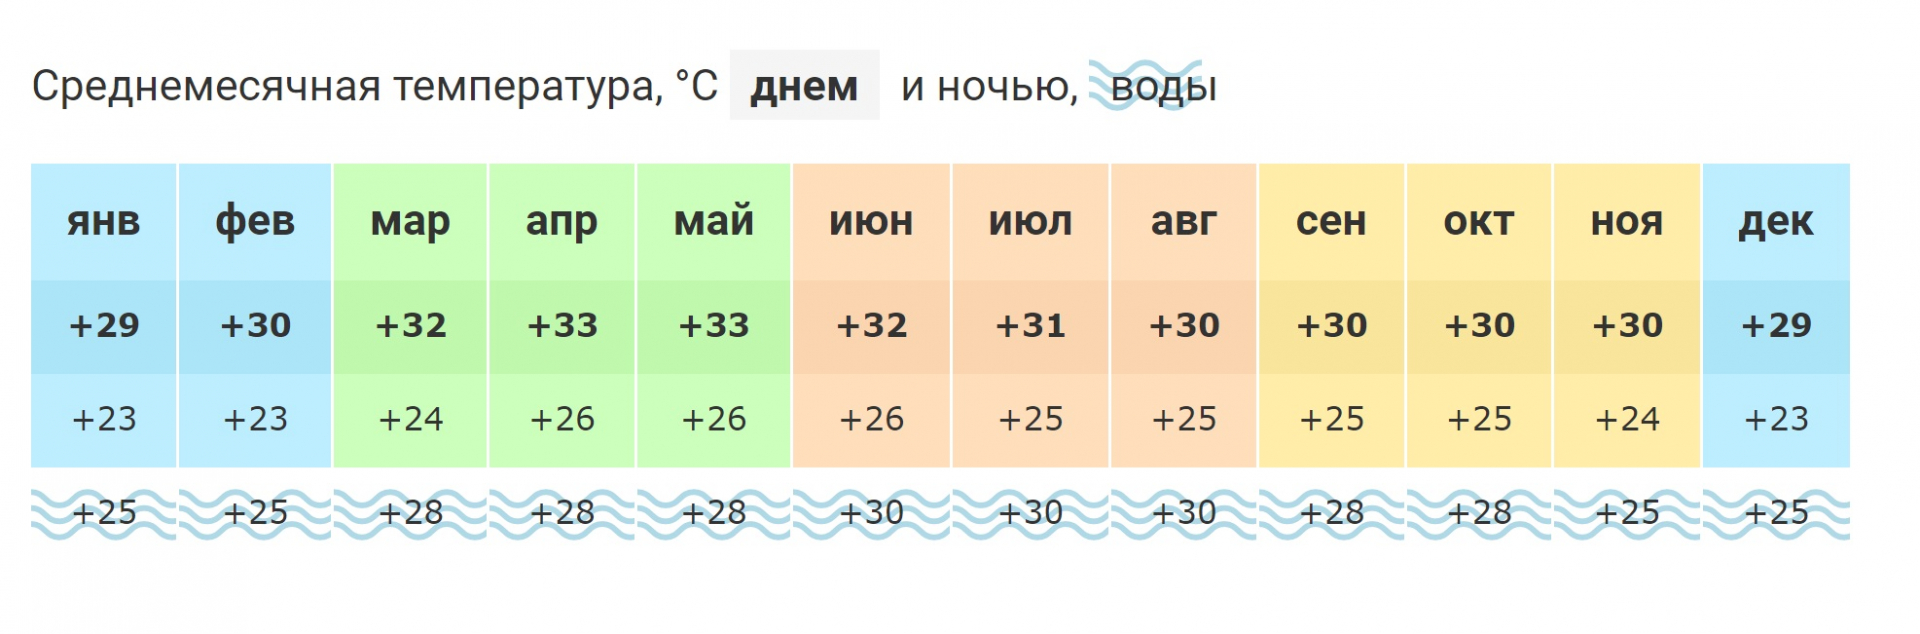 Температура воды в море аланья. Аланья климат по месяцам. Климат Анталии по месяцам. Средняя температура в Хургаде по месяцам. Аланья температура по месяцам.